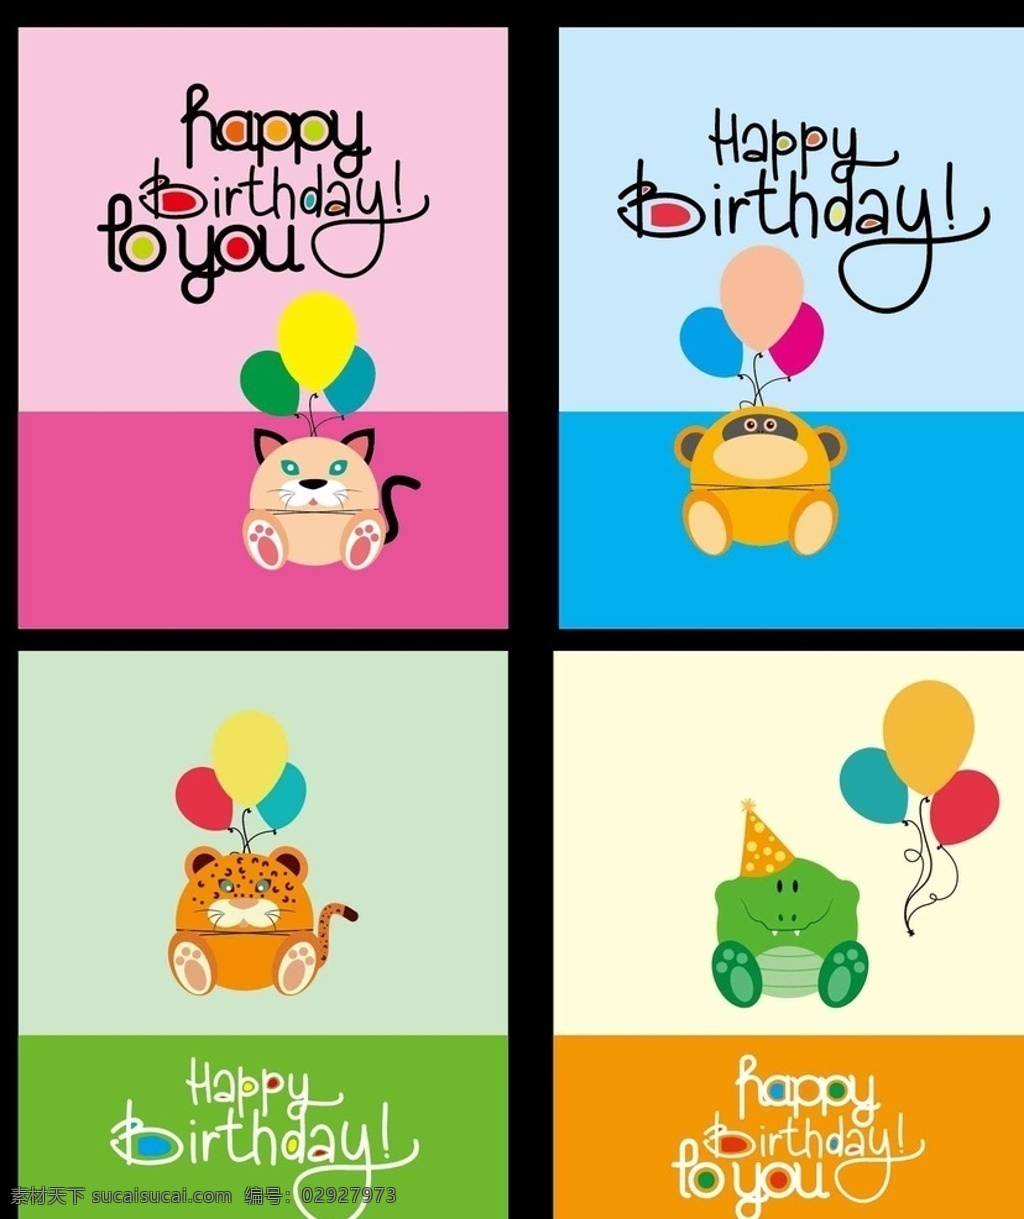 色块拼接底纹 生日快乐 气球 动物 文字 包装设计